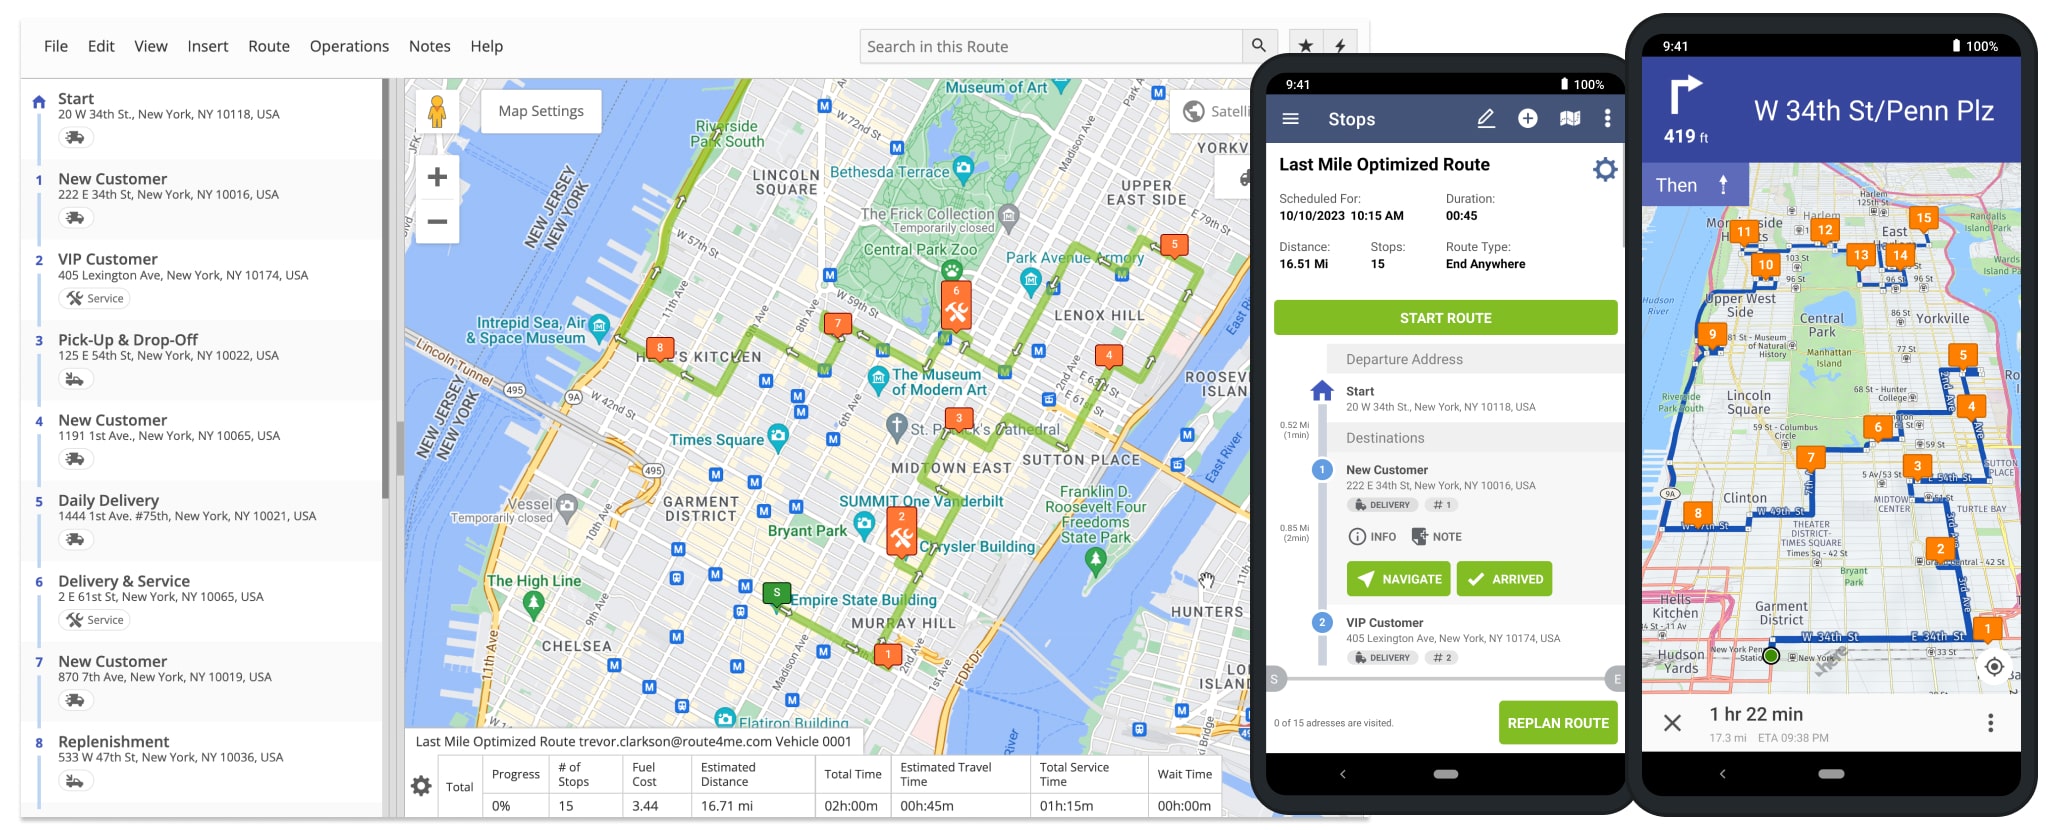 Låne udslettelse eksplosion Plan & Sequence Multi-Address Routes on Android Route Planner